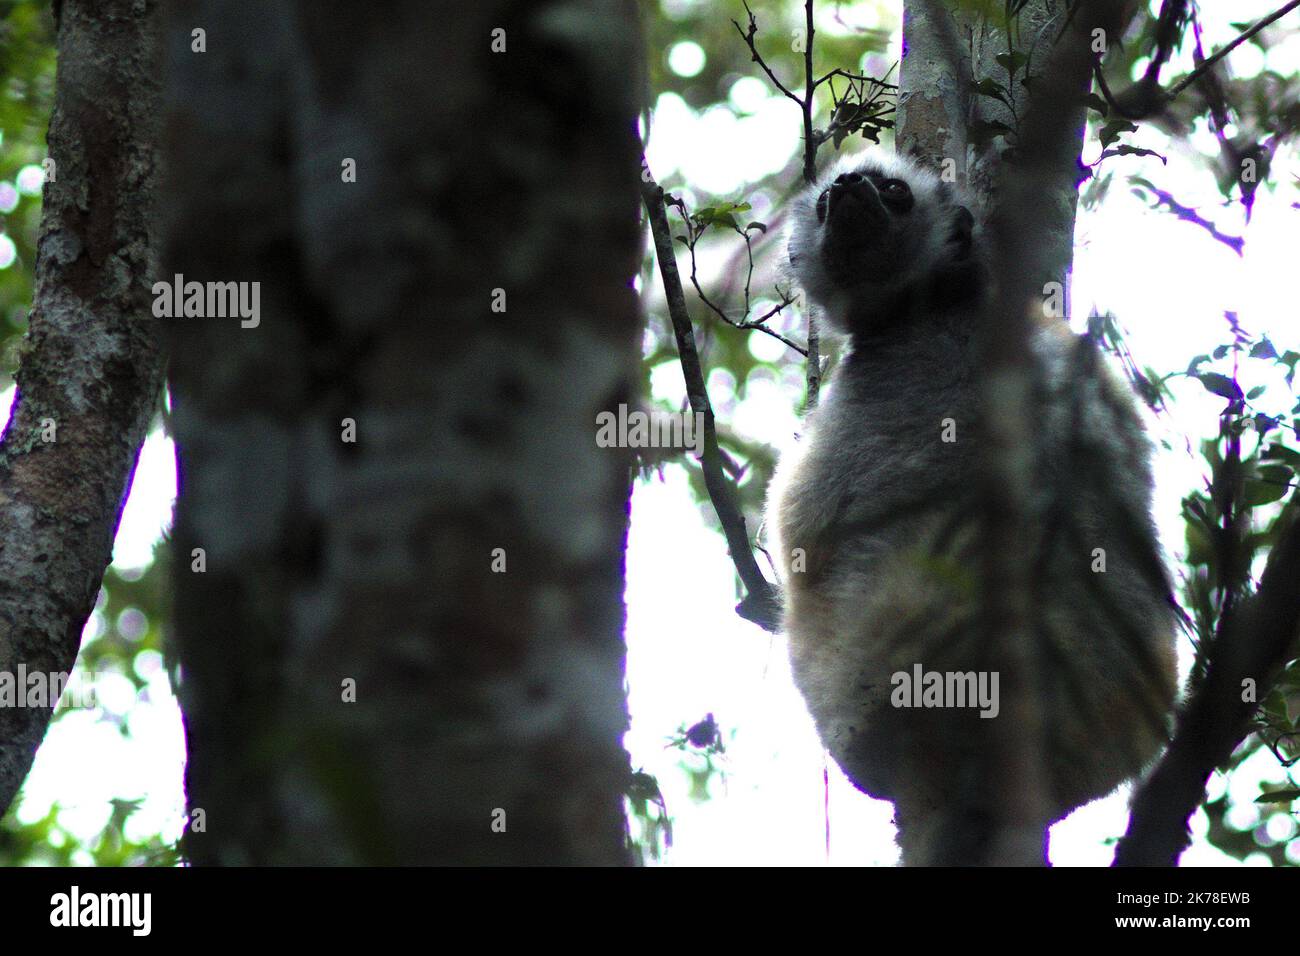 ©Arnaud De Grave / Le Pictorium/MAXPPP - Arnaud De Grave / Le Pictorium - 10/11/2016  -  Madagascar / Alaotra-Mangoro  -  Lemurien dans le parc national naturel Zahamena.  / 10/11/2016  -  Madagascar / Alaotra-Mangoro  -  Lemur in the Zahamena national park. Stock Photo